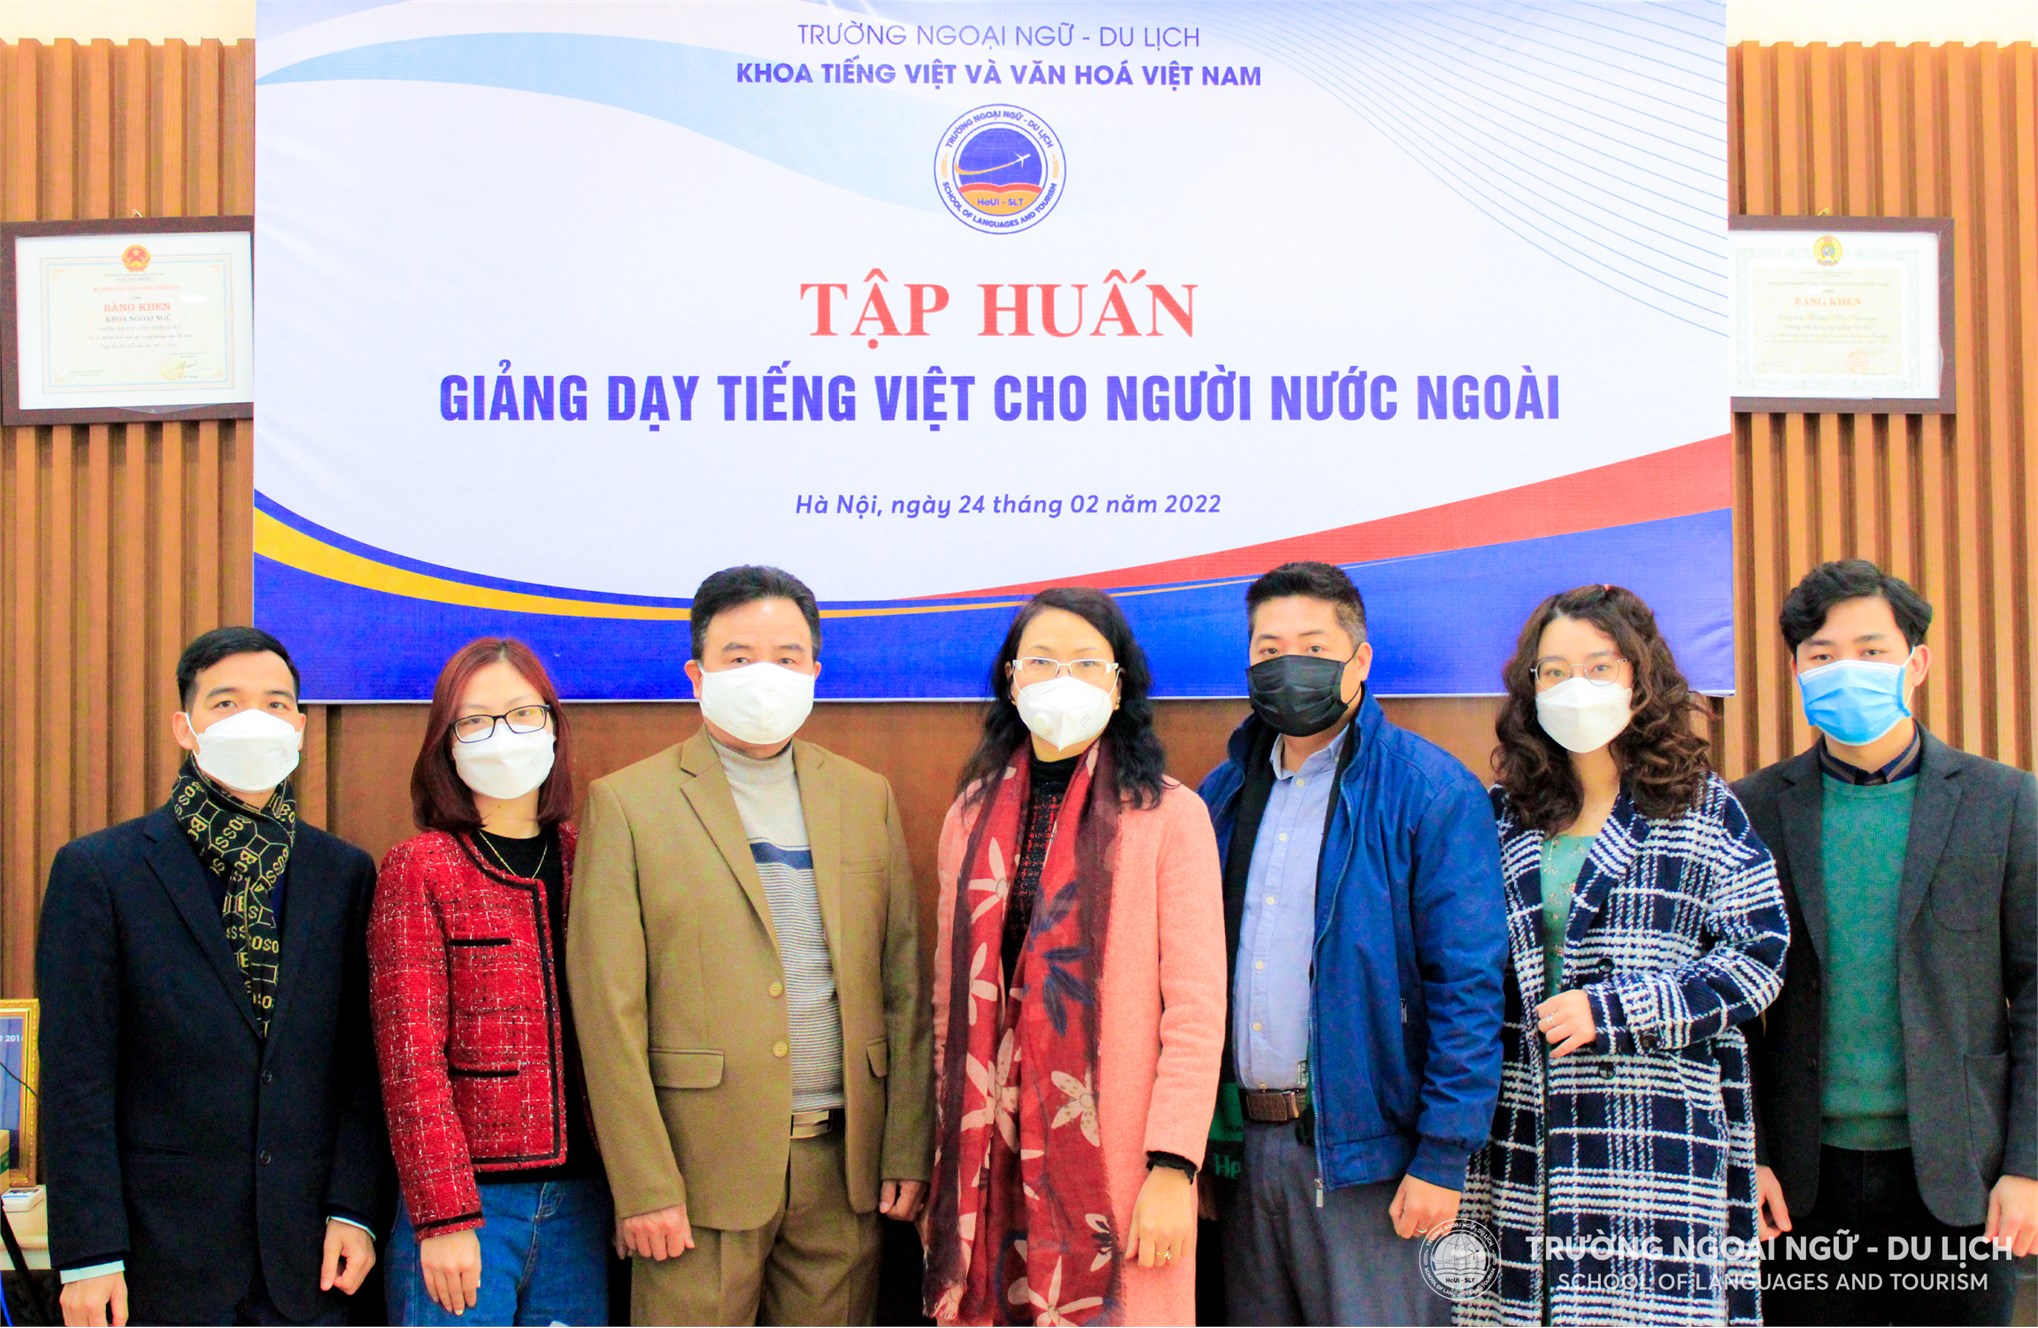 Tập huấn phương pháp giảng dạy tiếng Việt cho người nước ngoài